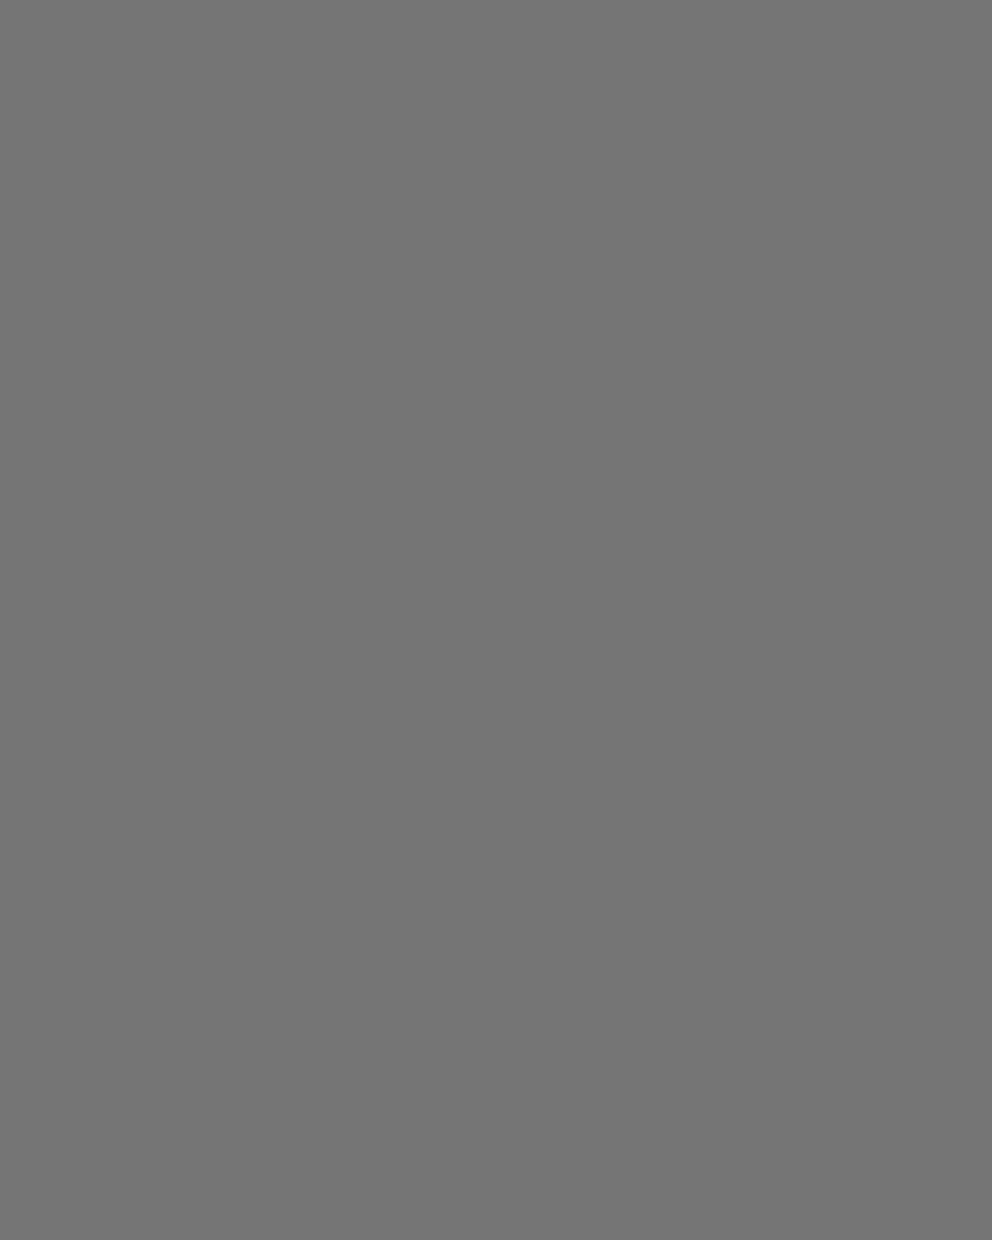 Актриса Наталья Варлей. Ленинград, 1960-е годы. Белозерский областной краеведческий музей, Белозерск